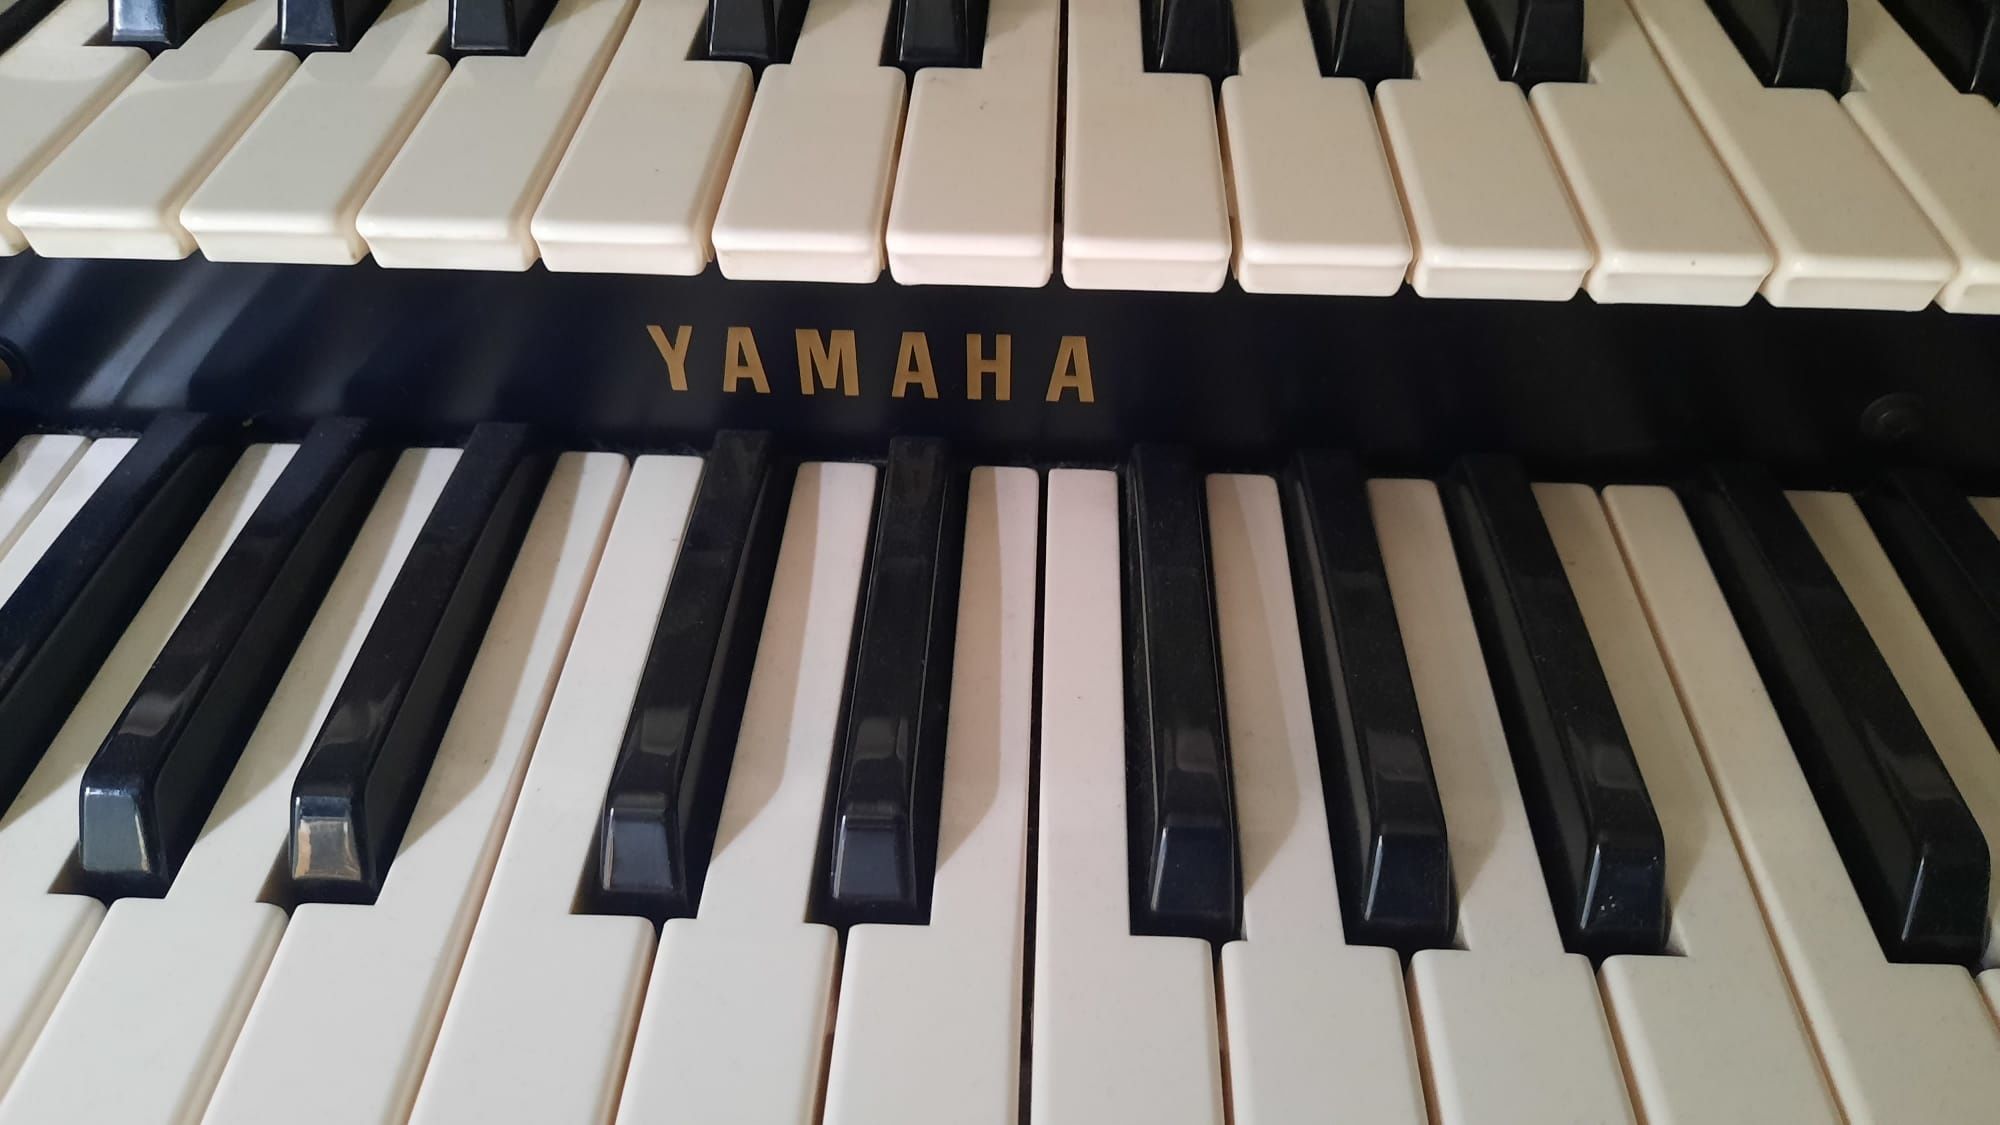 Pianina orga yamaha made în japan